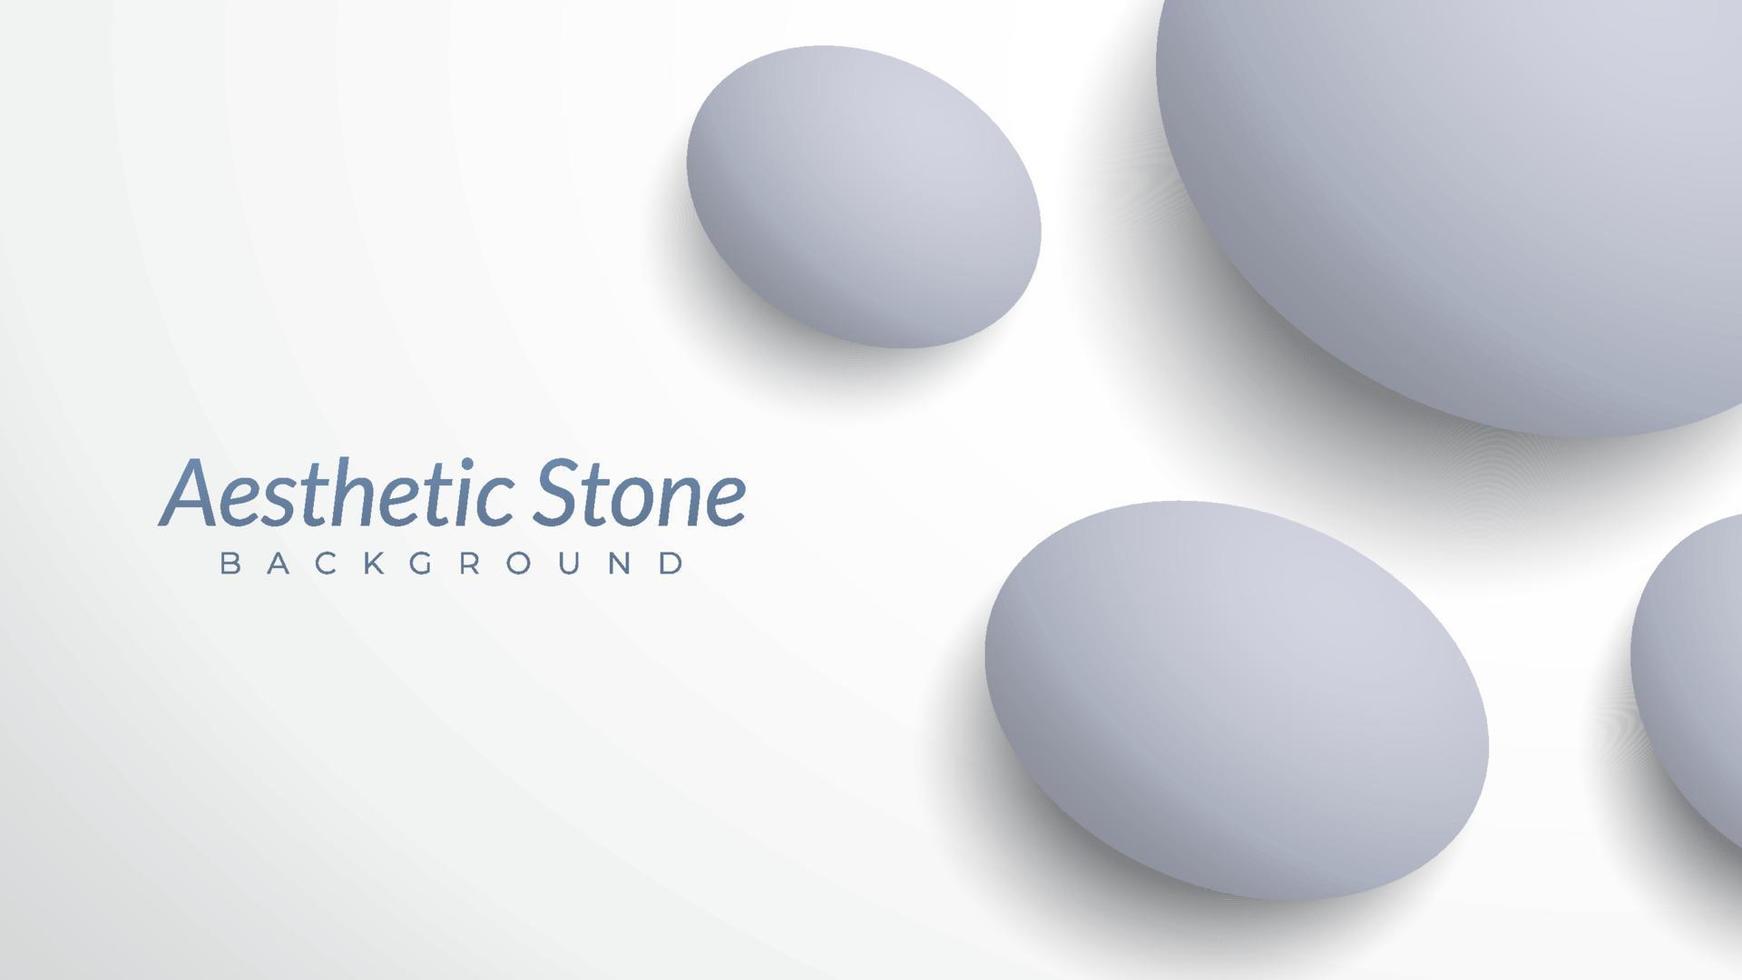 modèle de conception d'arrière-plan esthétique avec espace vide. illustration vectorielle de pierres de marbre. forme ovale comme un œuf. simple et minimal. luxe, élégant, lumineux, blanc, gris clair. dégradé de couleurs pastel vecteur